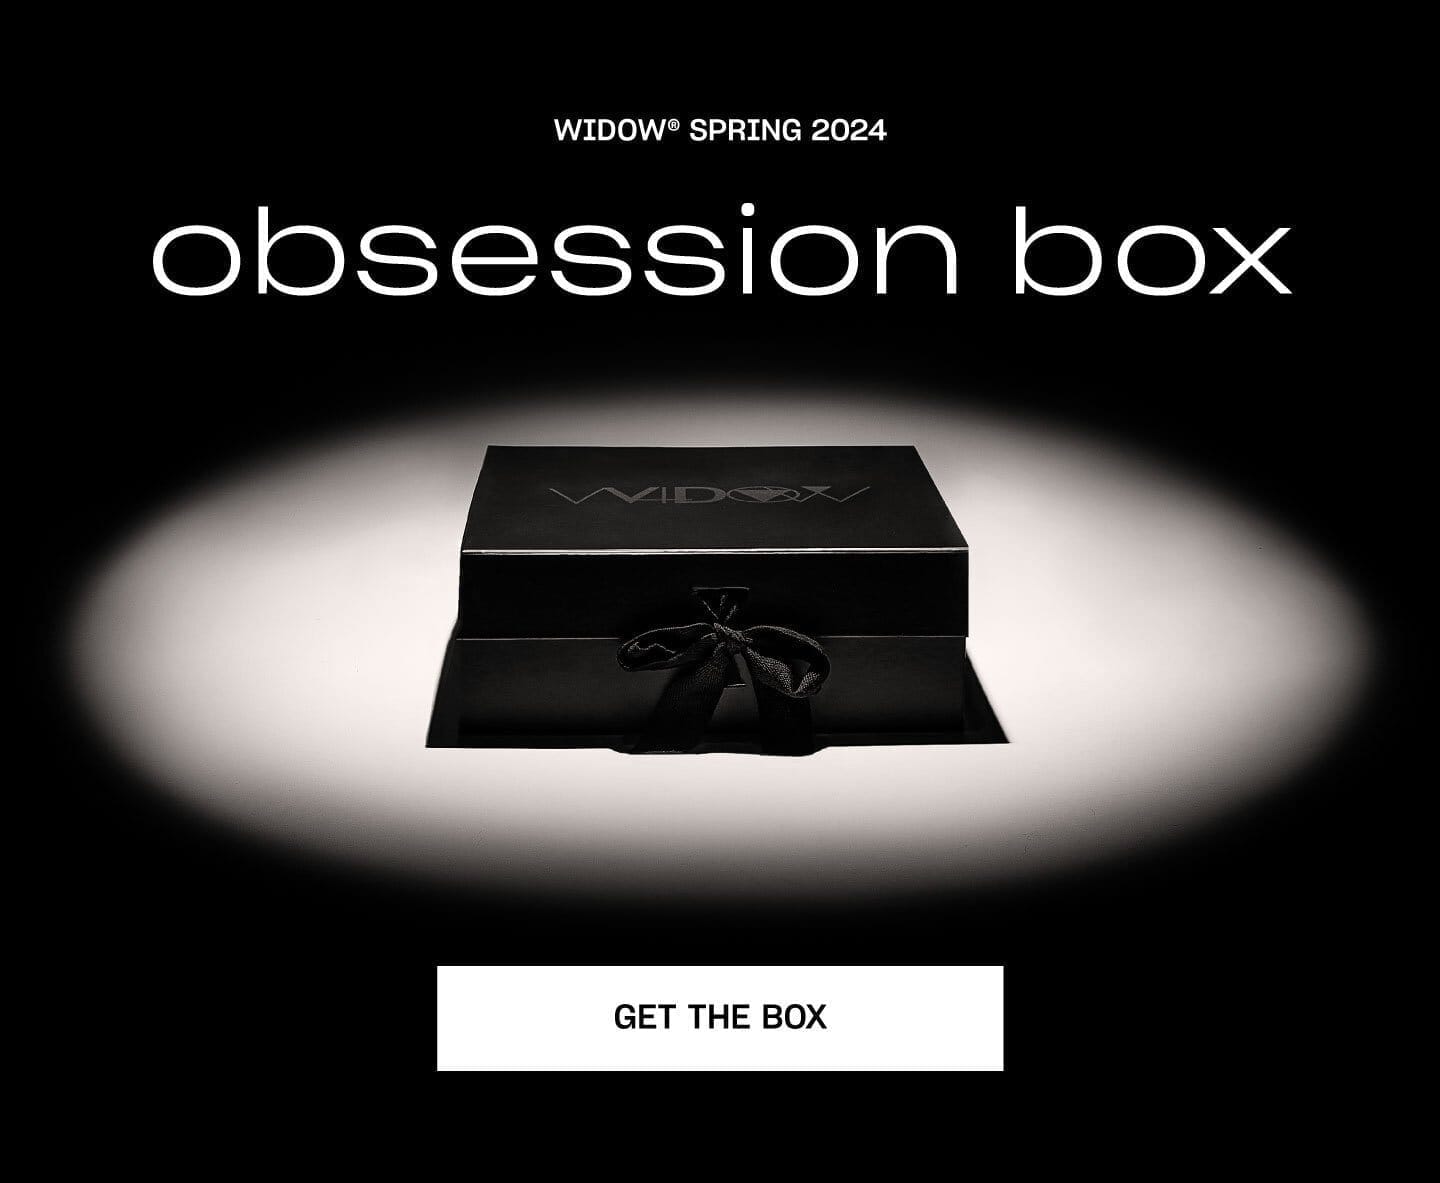 WIDOW OBSESSION BOX